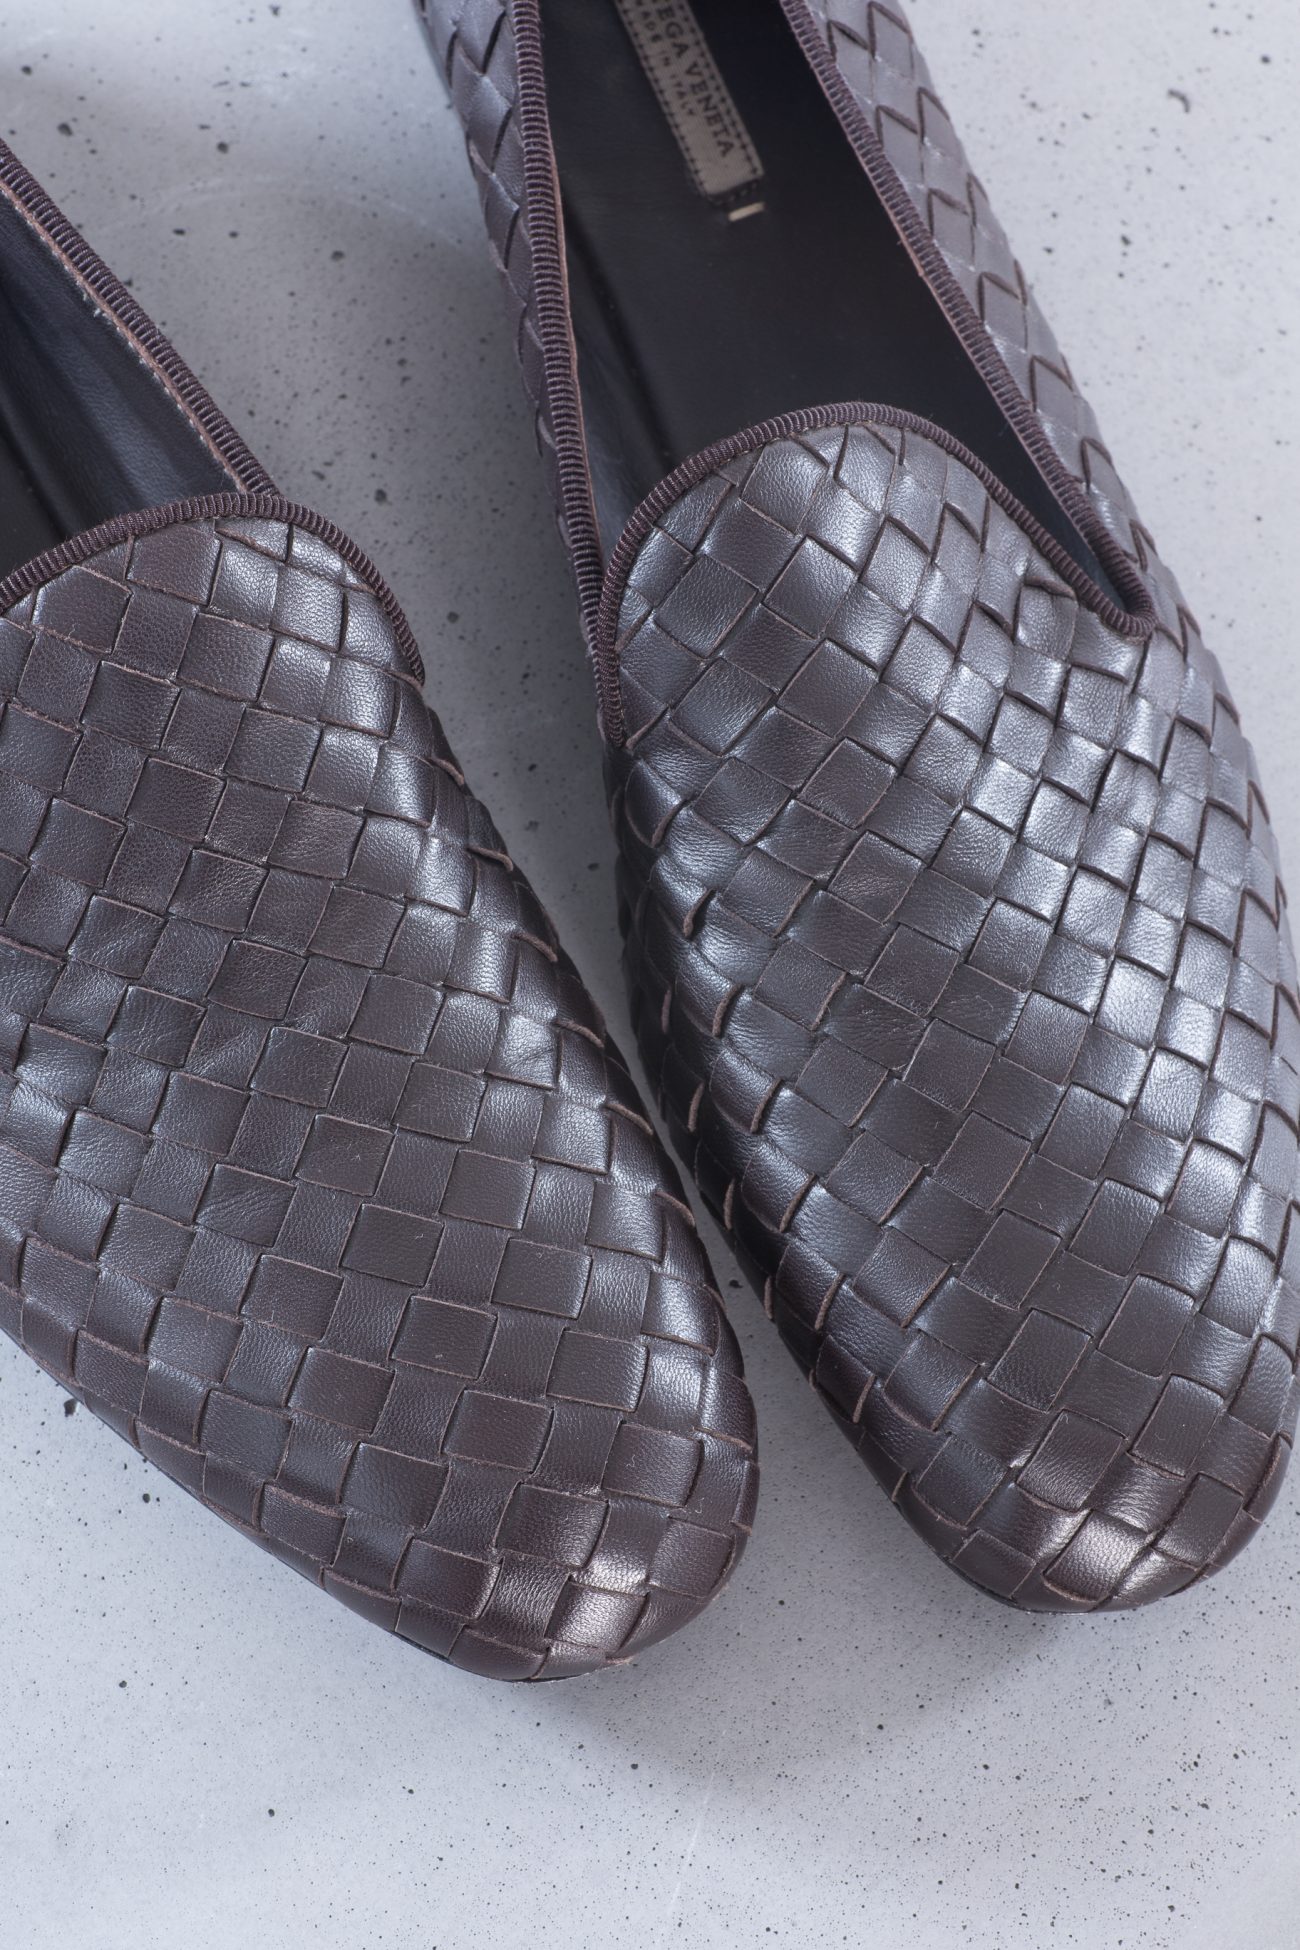 Bottega Veneta Intrecciato Woven Leather Slipper Loafers